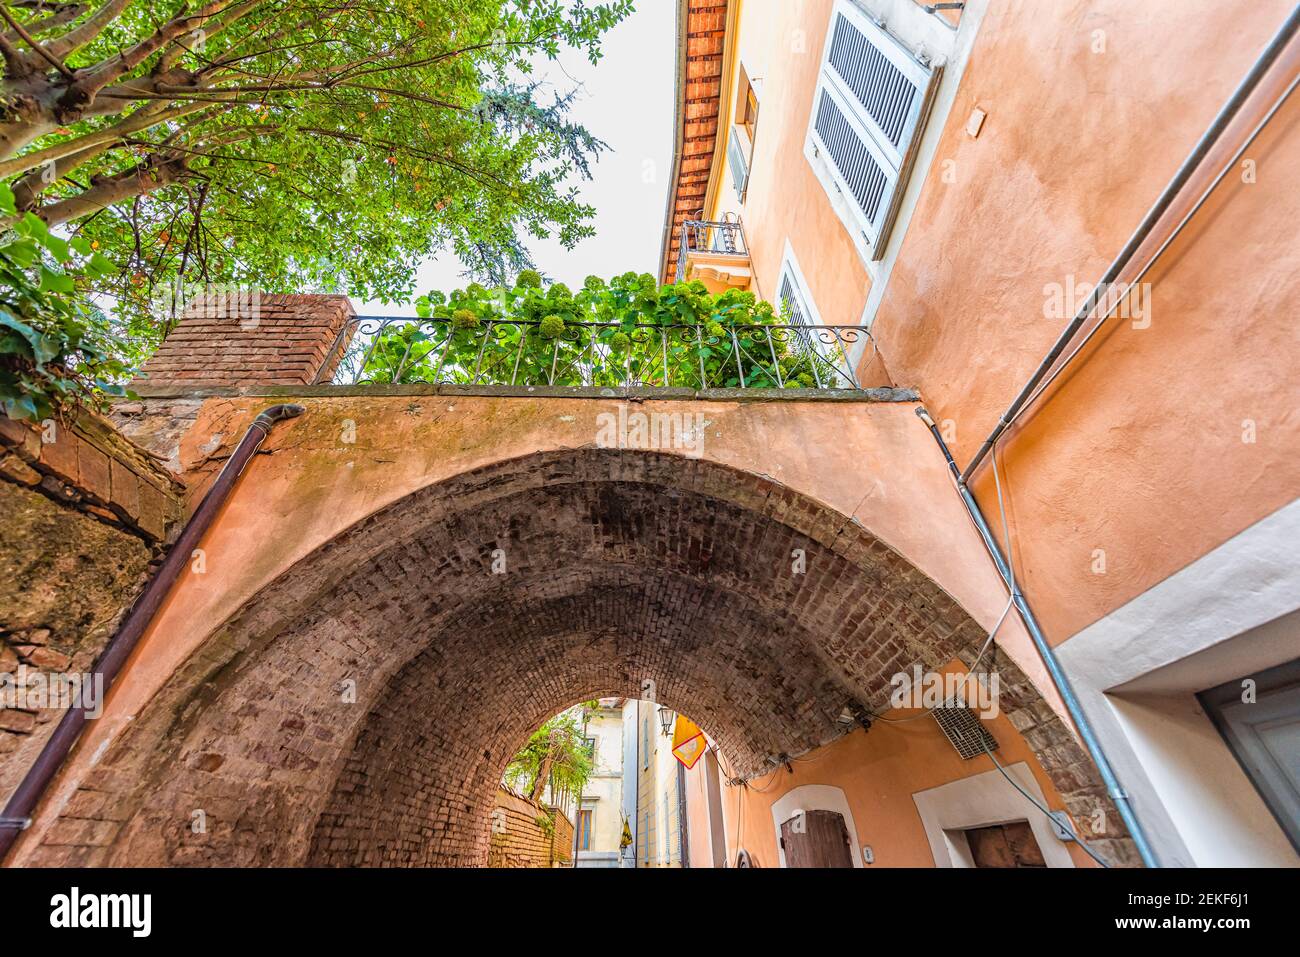 Chiusi, Italien Straße in kleinen historischen mittelalterlichen Dorf in der Toskana Sommer mit niemand orange bunte Wand und Bogen Gewölbe Durchgang Stockfoto